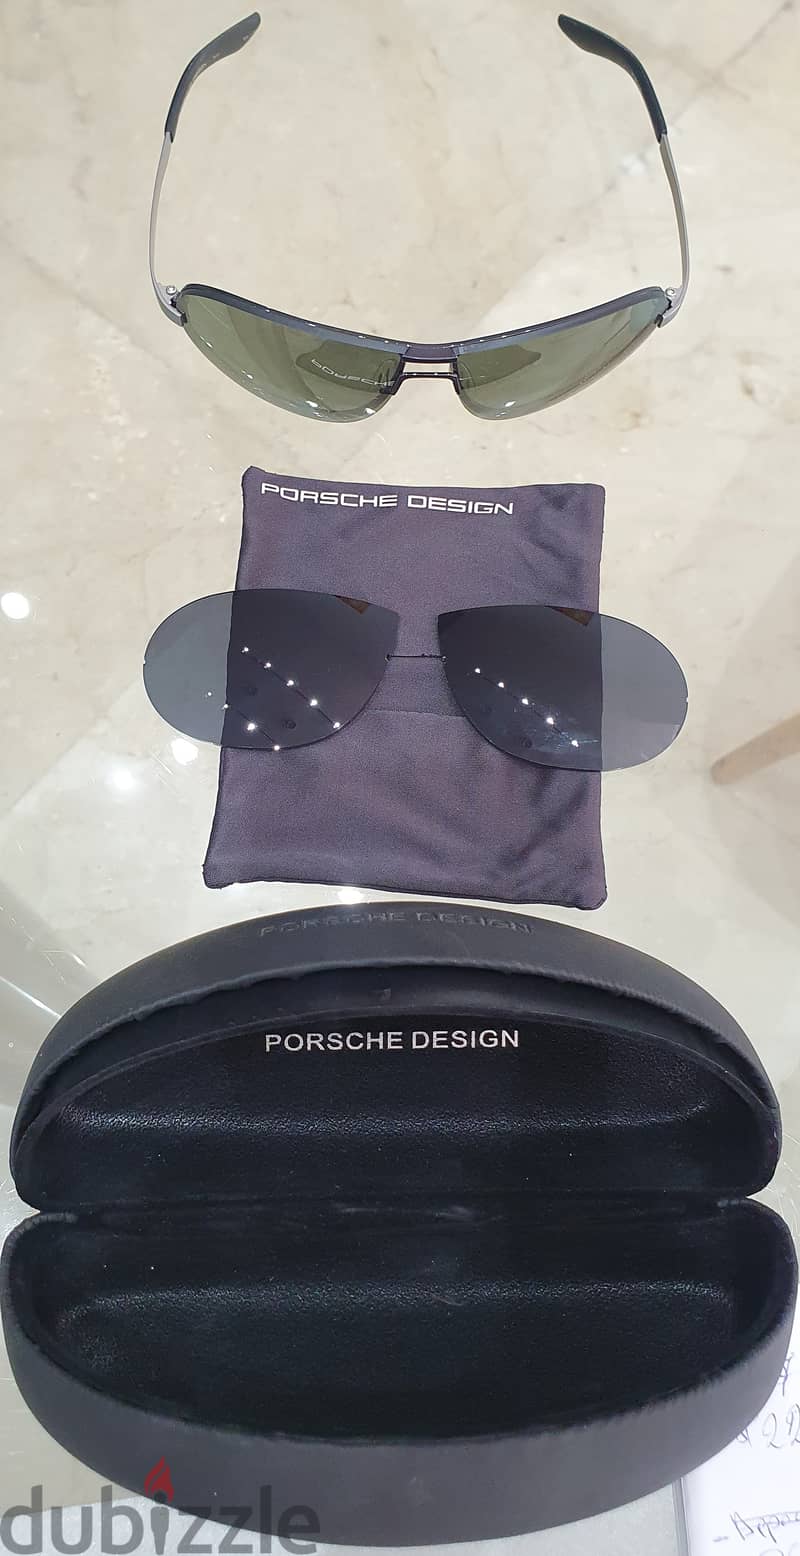 PORSCHE DESIGN Sunglasses with 2 colors exchangeable lenses 4